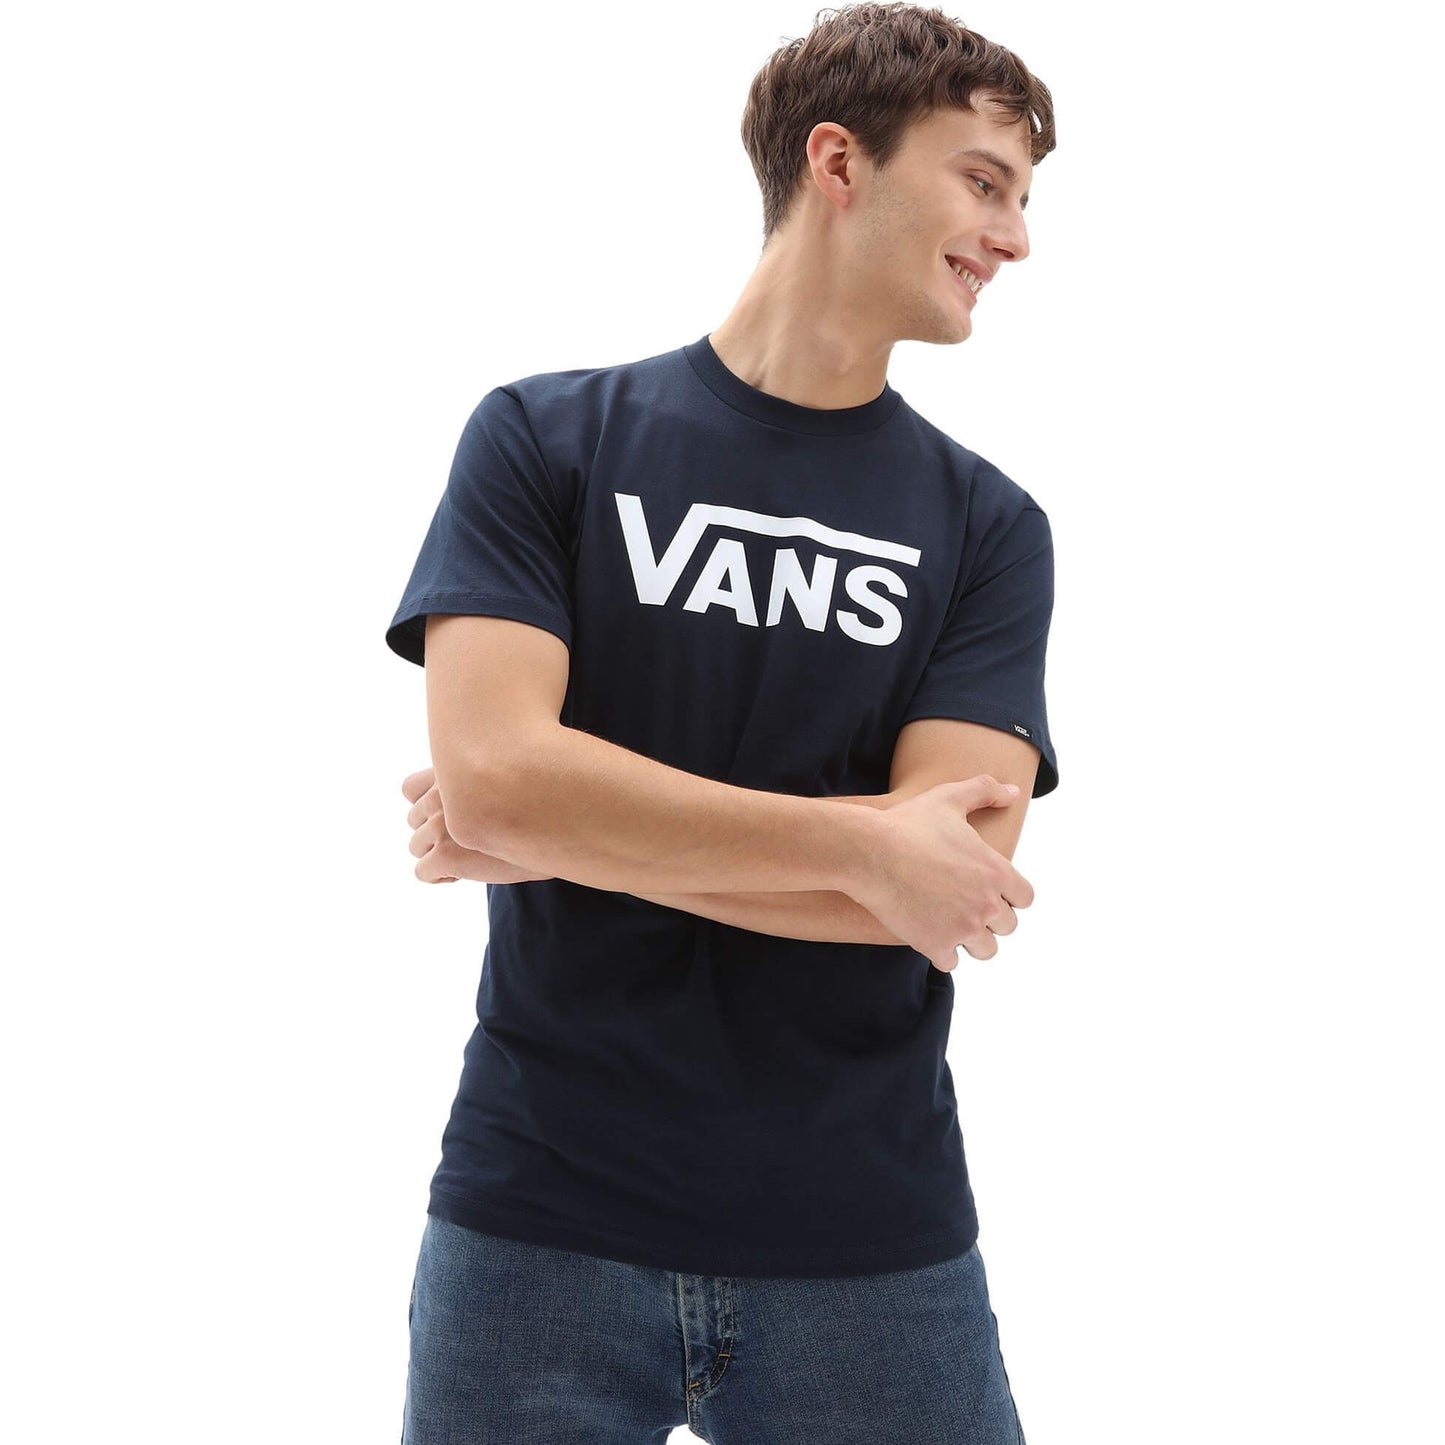 Vans Classic T-Shirt Navy/White